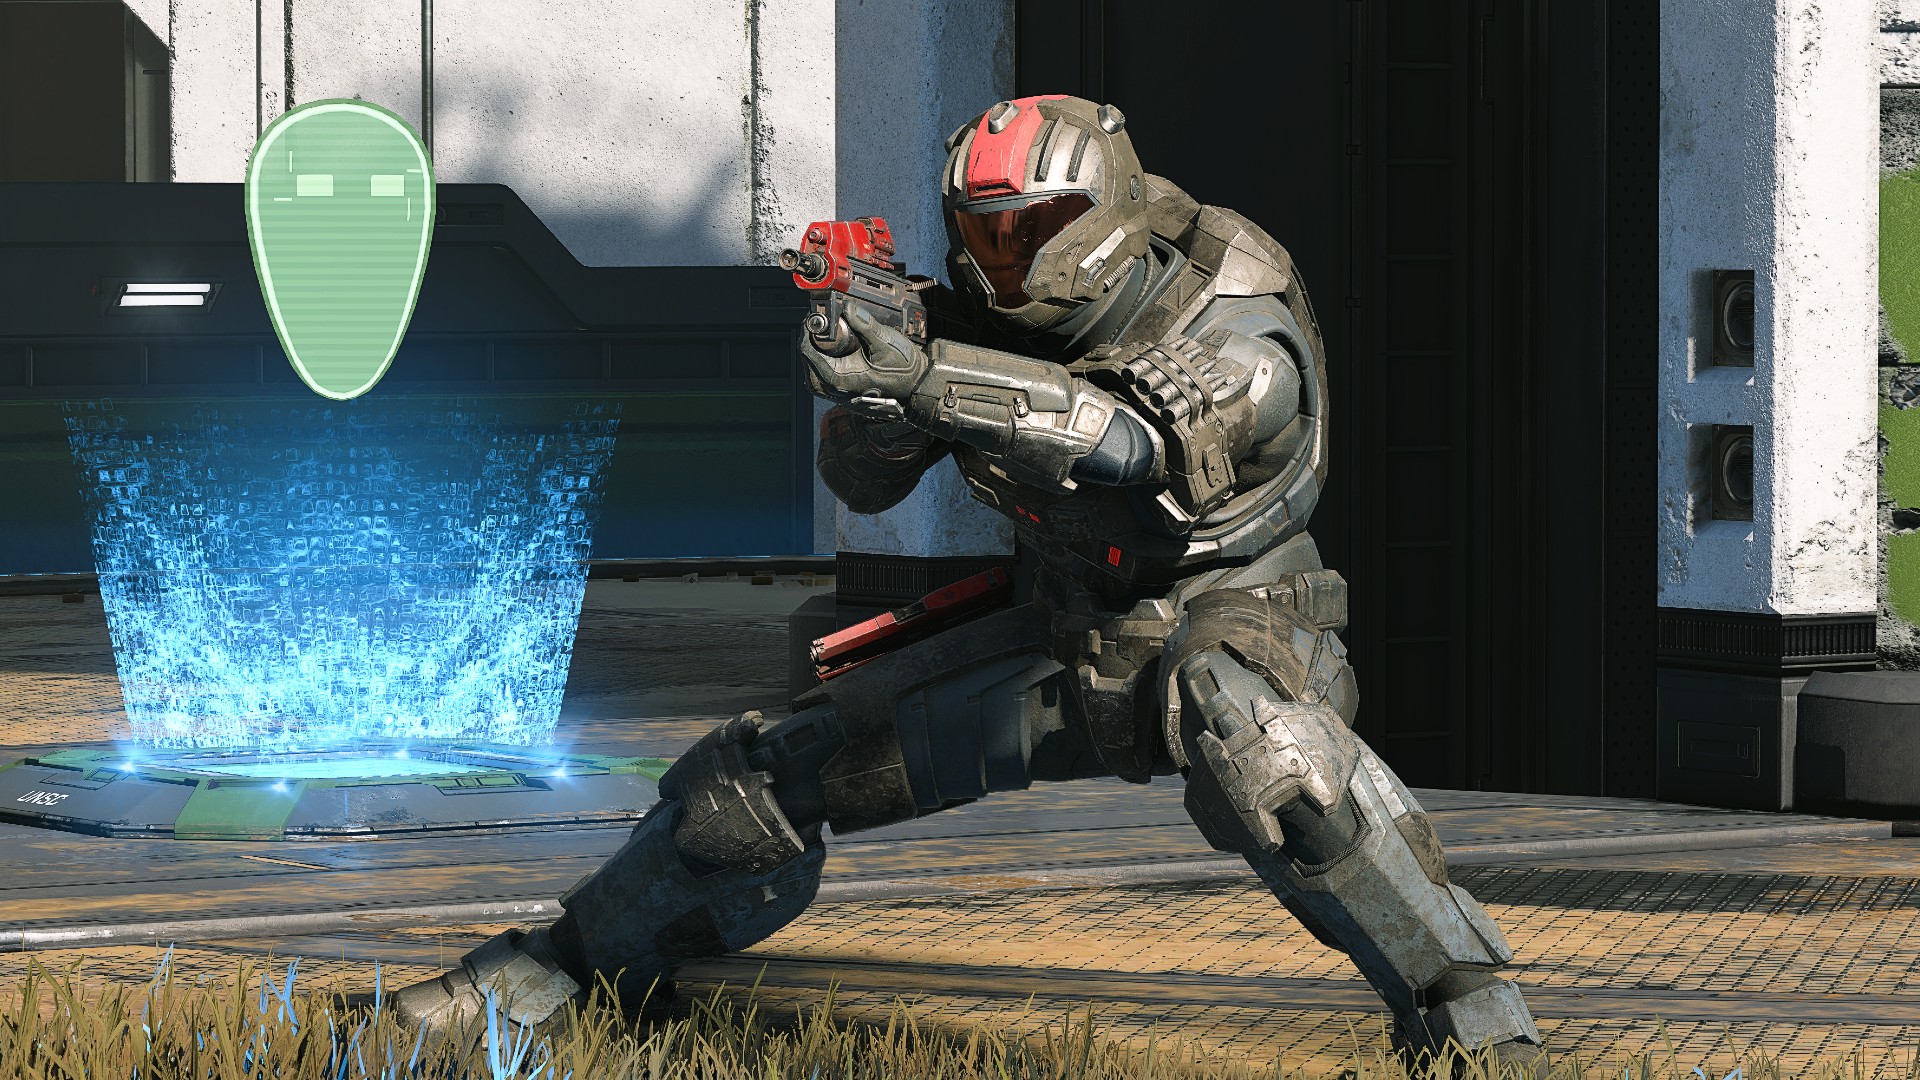 Halo: Infinite’s multiplayer beta start date isn’t locked in just yet